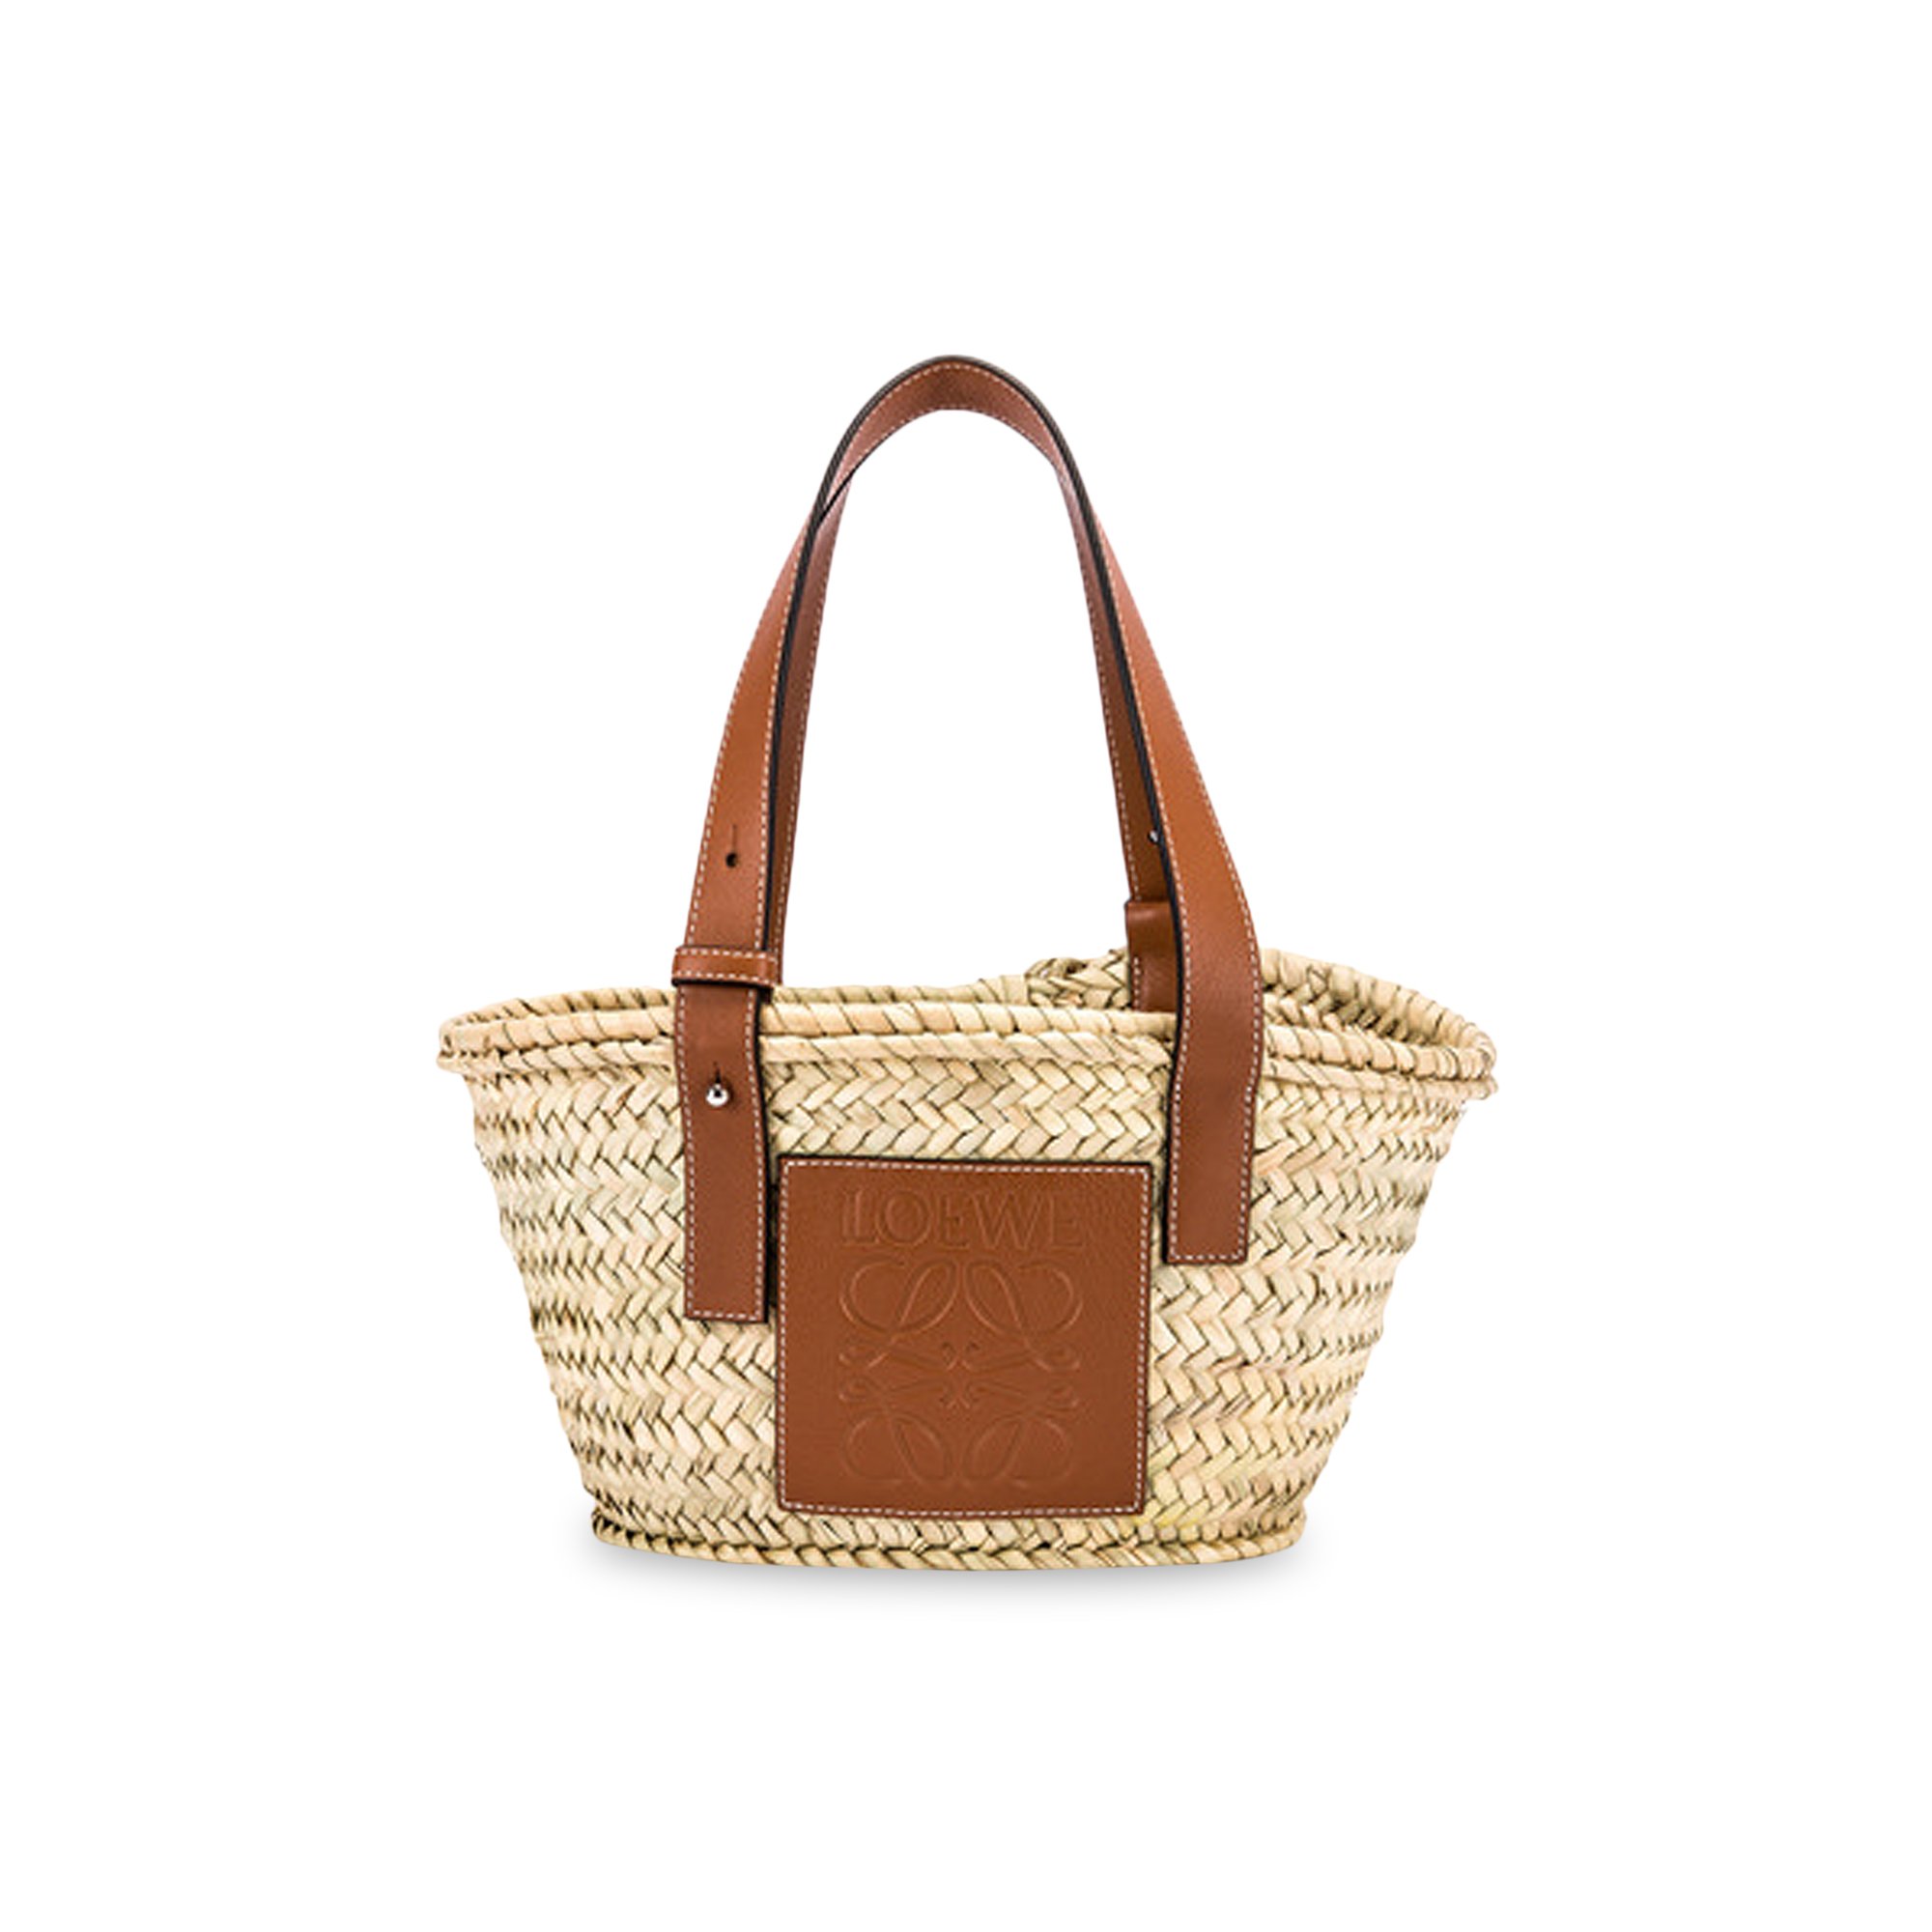 Buy Loewe Small Basket Bag 'Natural/Tan' - 327 02 S93 2435 | GOAT